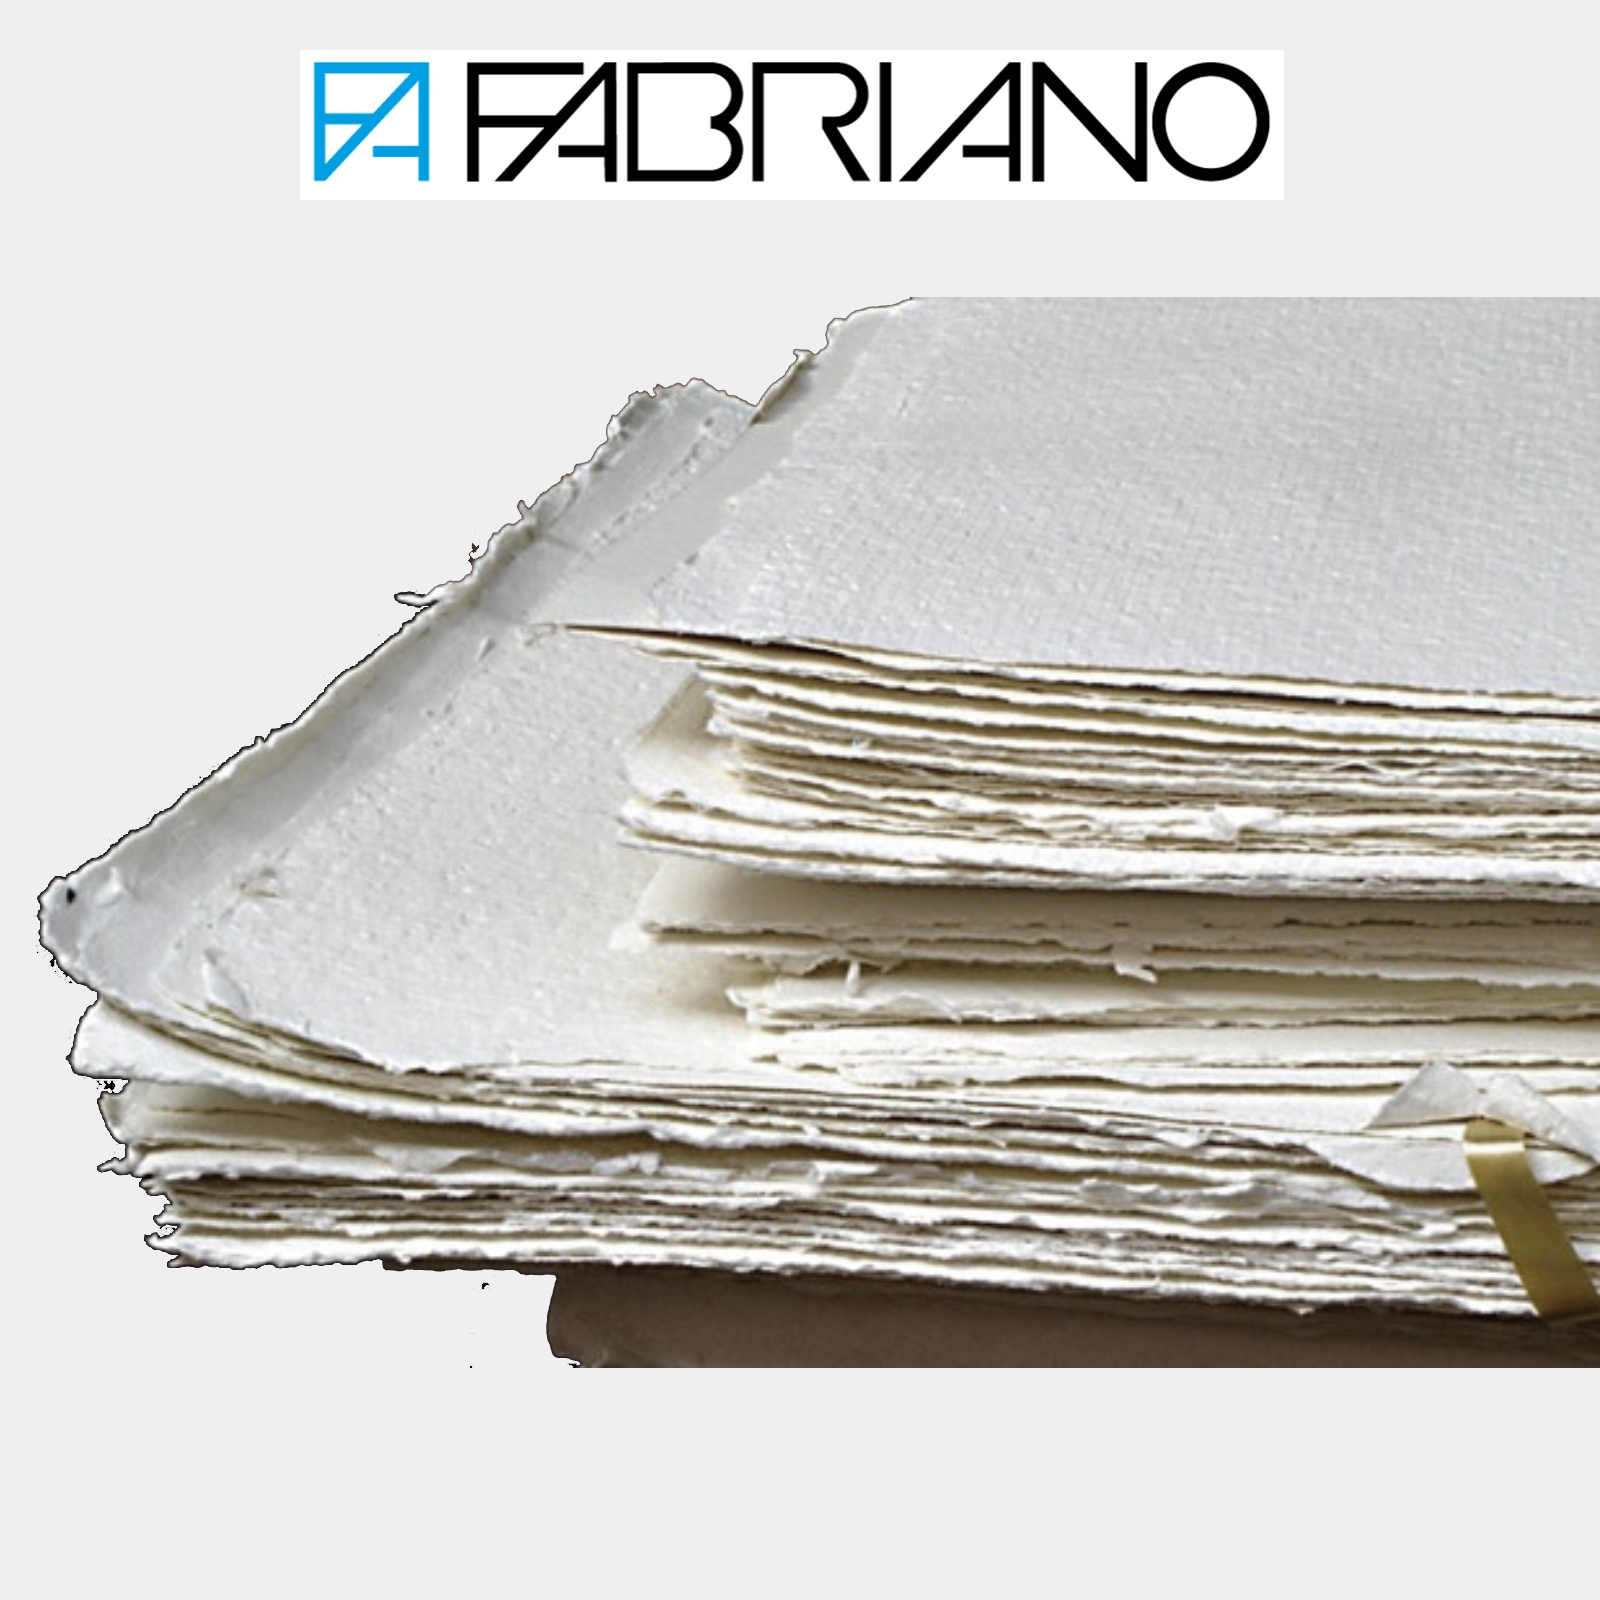 Fabriano - Blocco 10 fogli 300 gr/m2 carta per acquerello - 56 x 76 cm